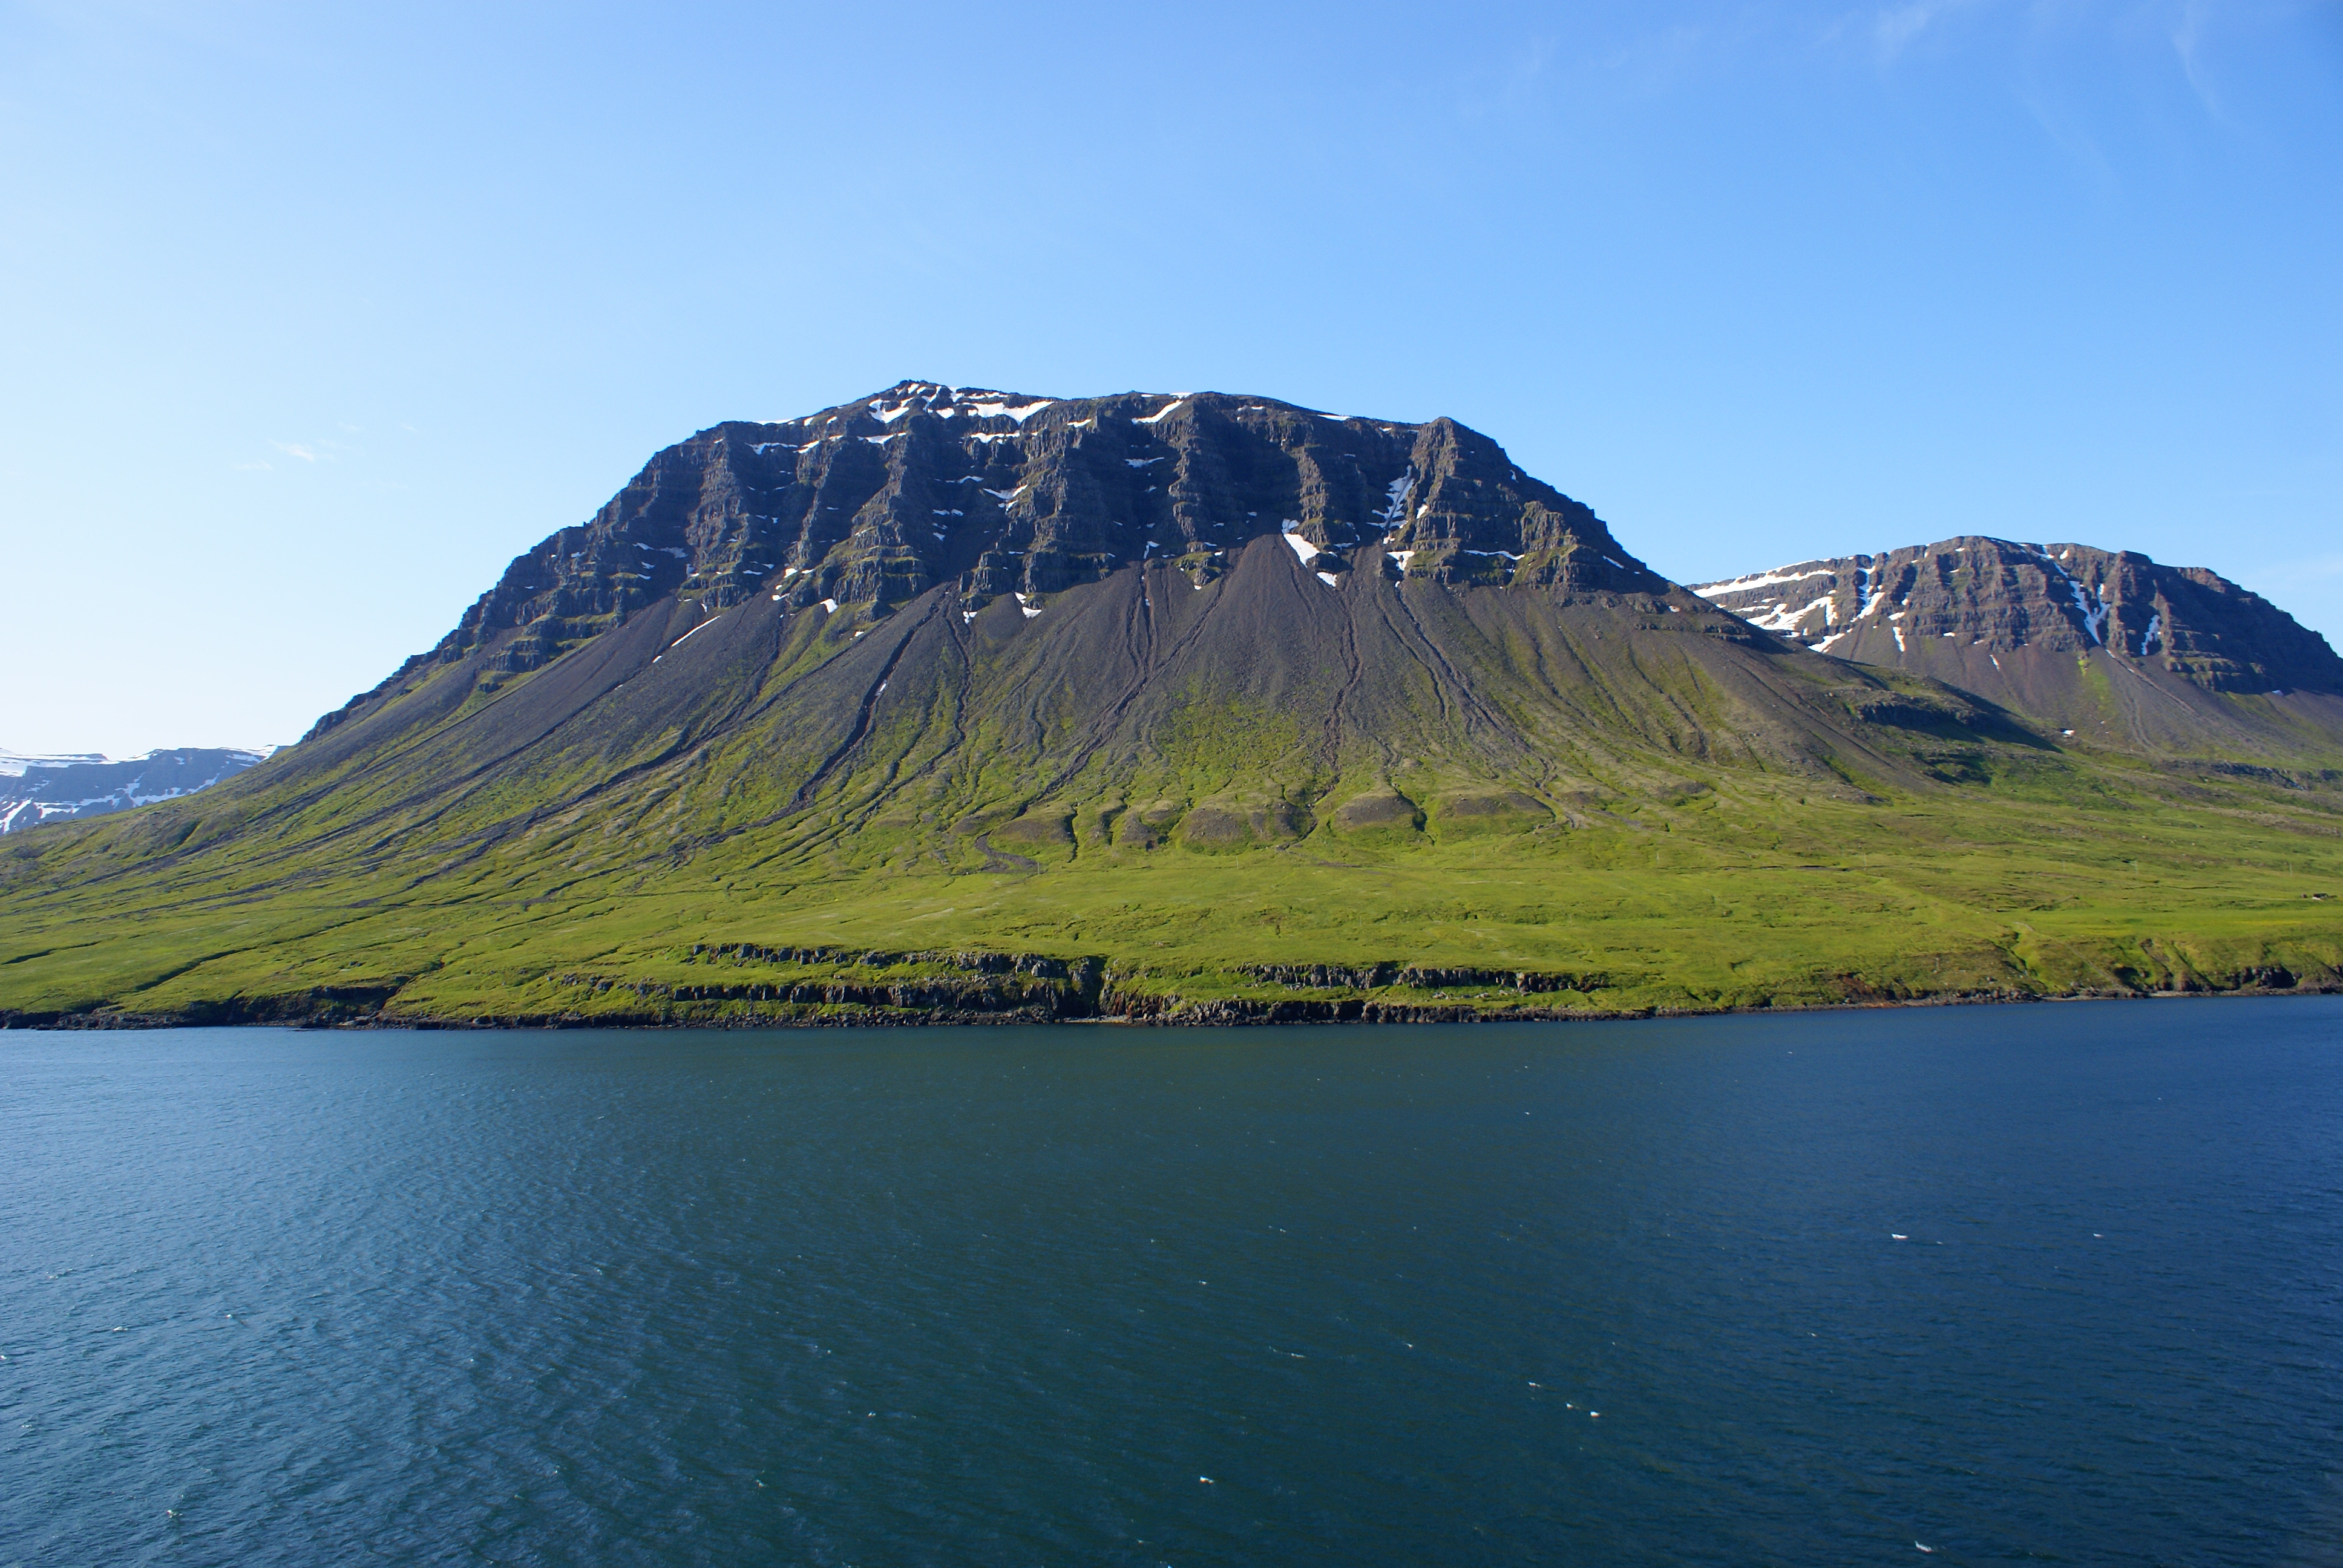 Rejs etapowy na Islandię. Rejsy stażowe na pływach.